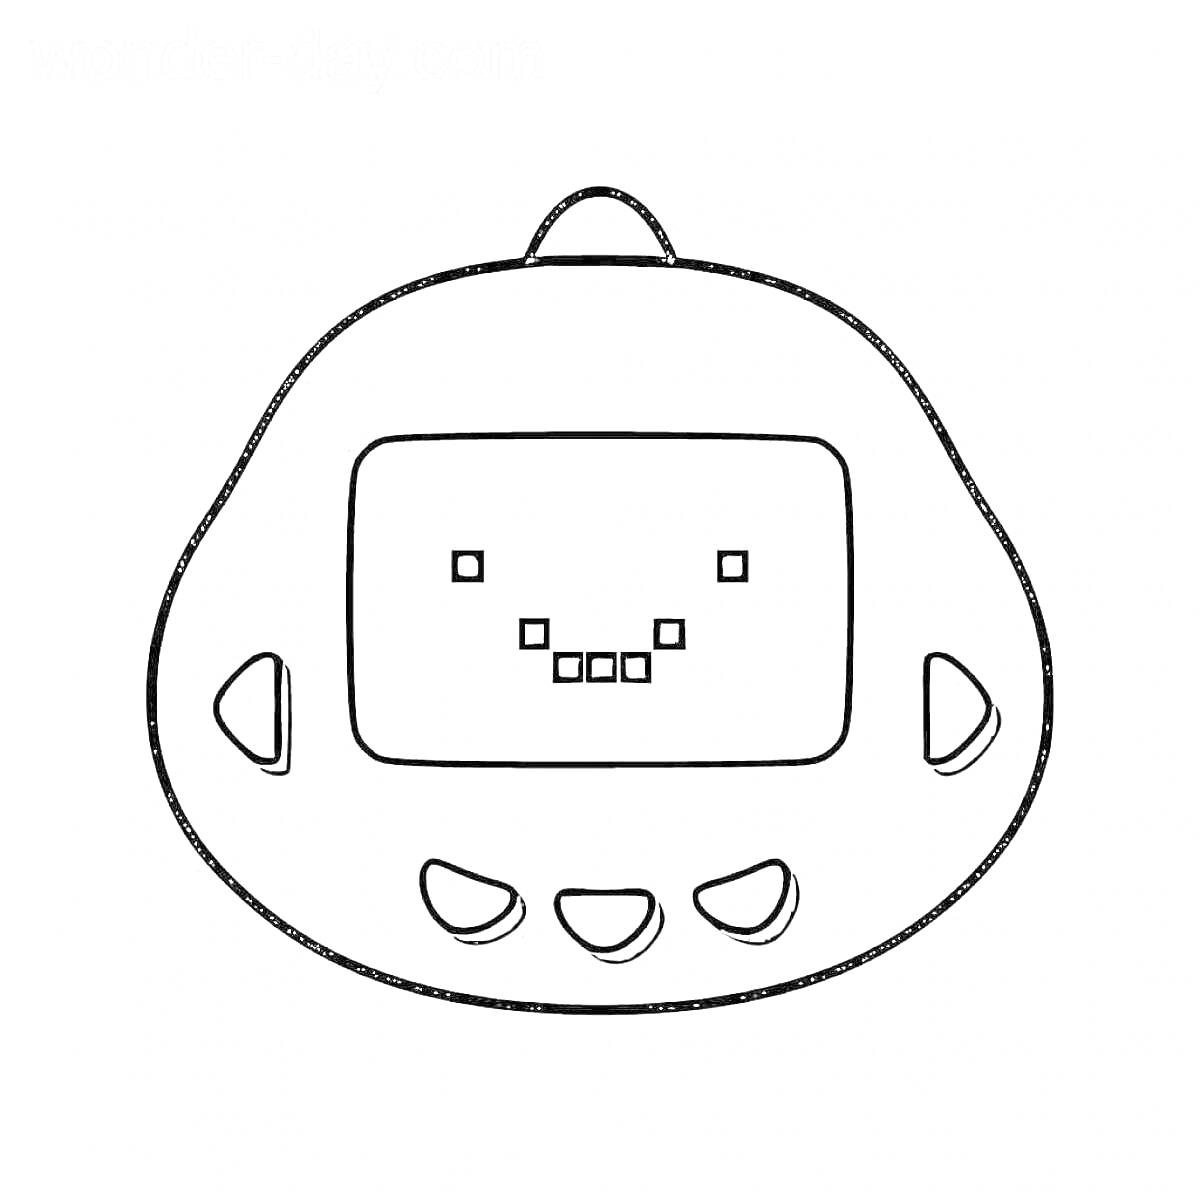 Раскраска Тамагочи с экраном и пиксельной улыбкой, пять кнопок